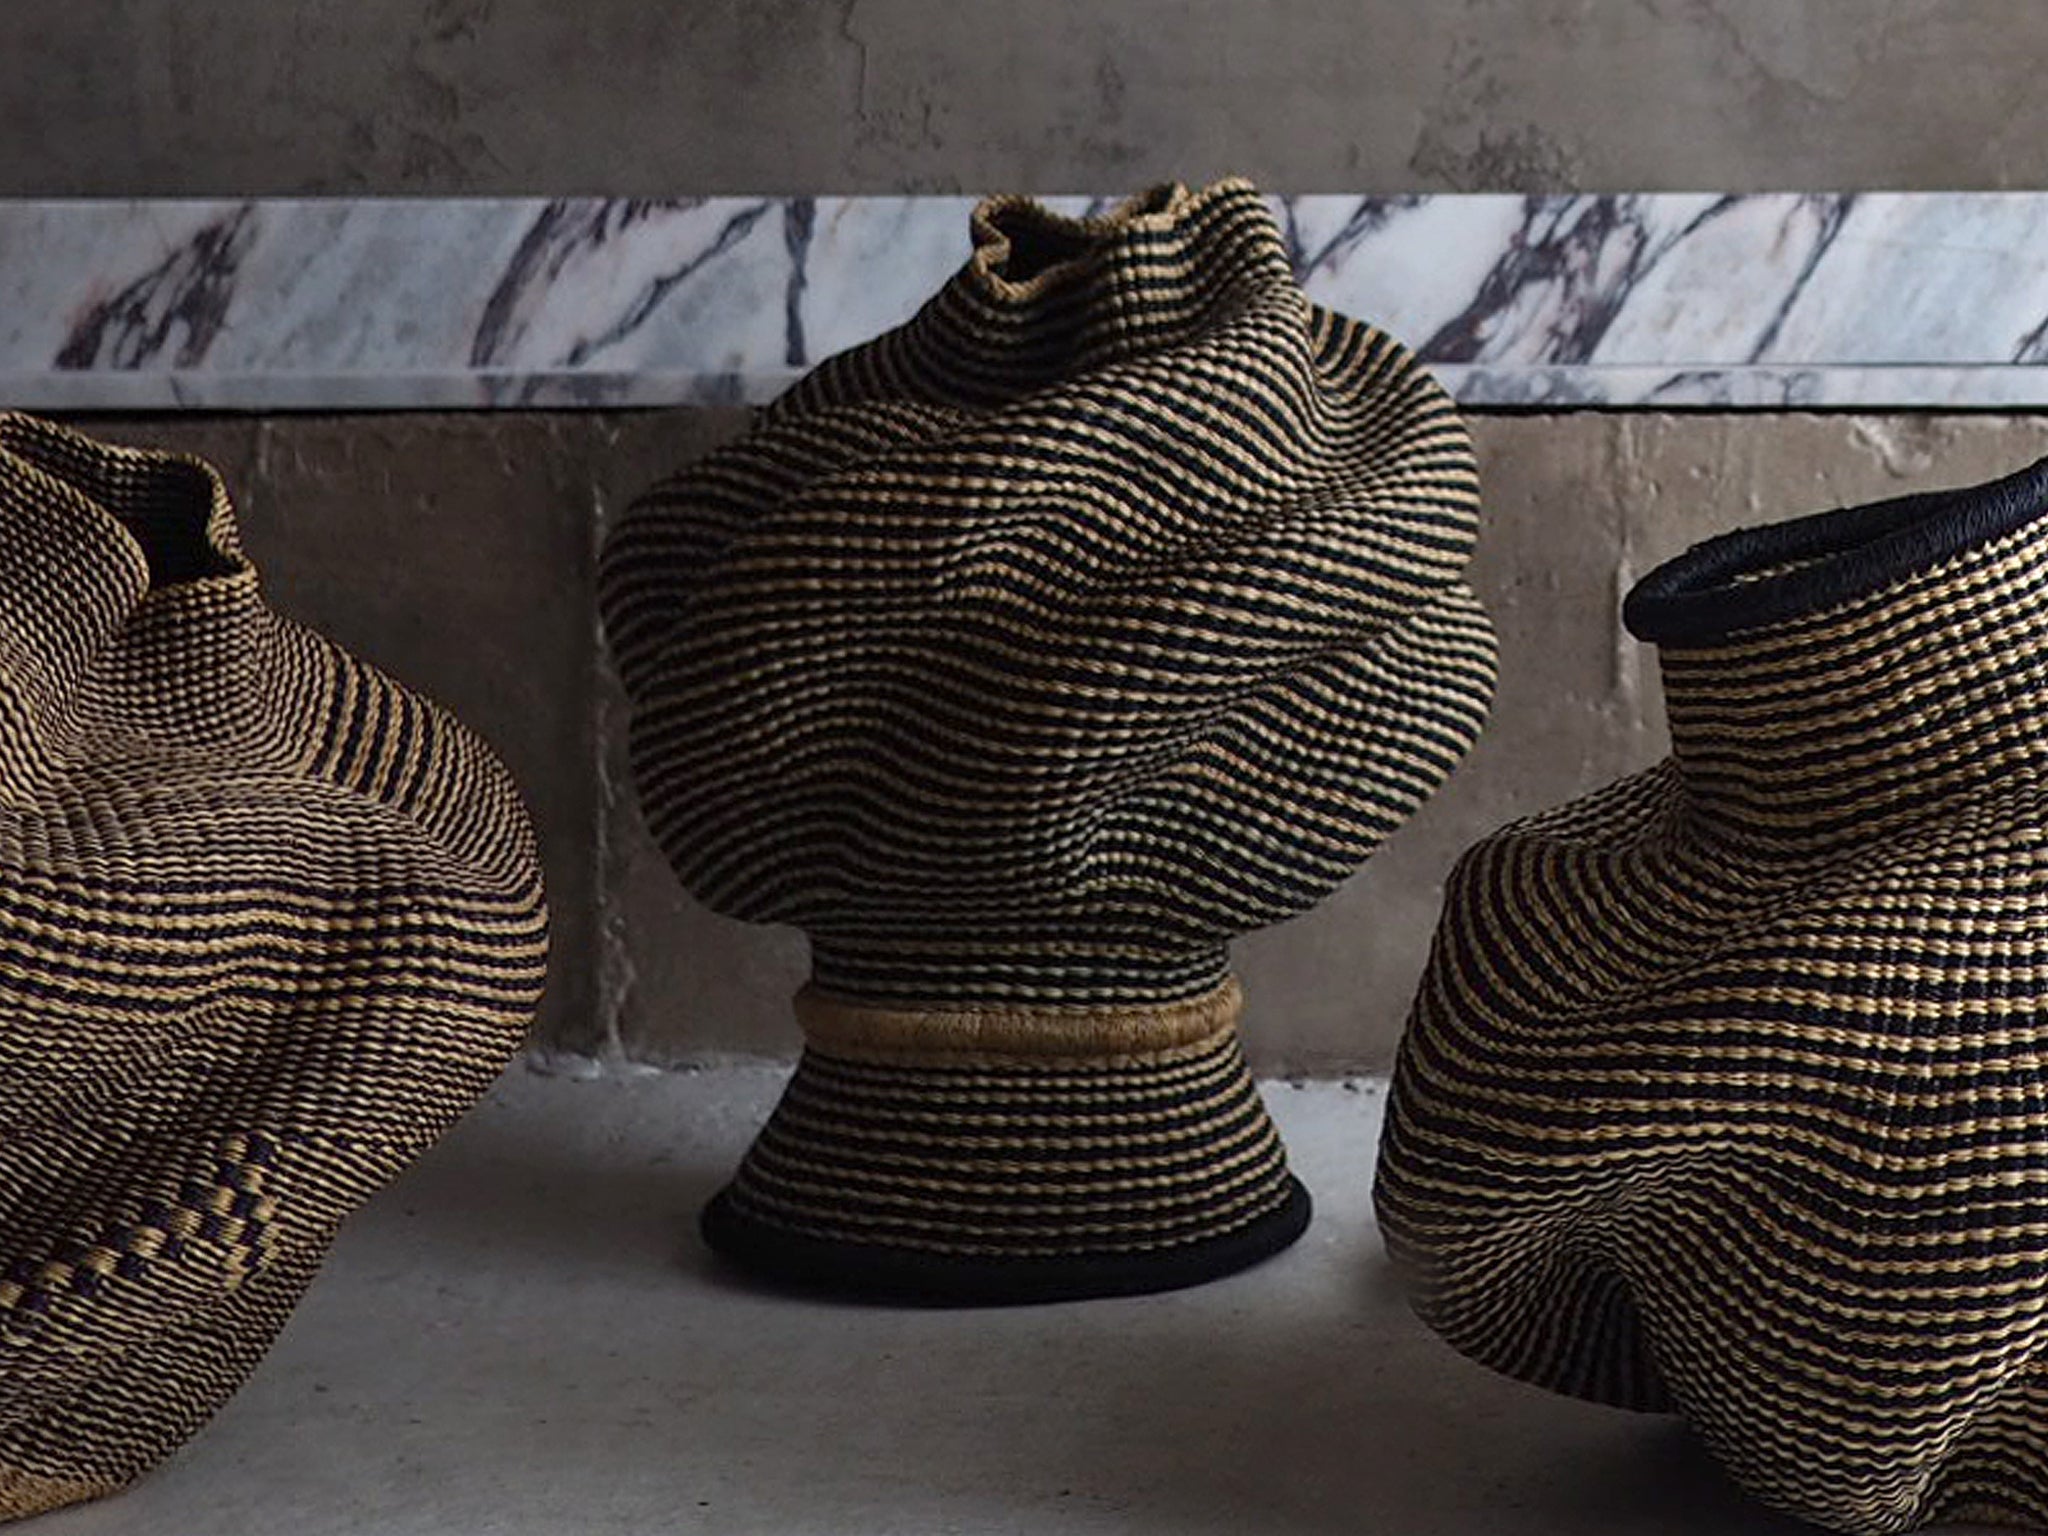 Handmade Sculptural Basket, Black & Natural